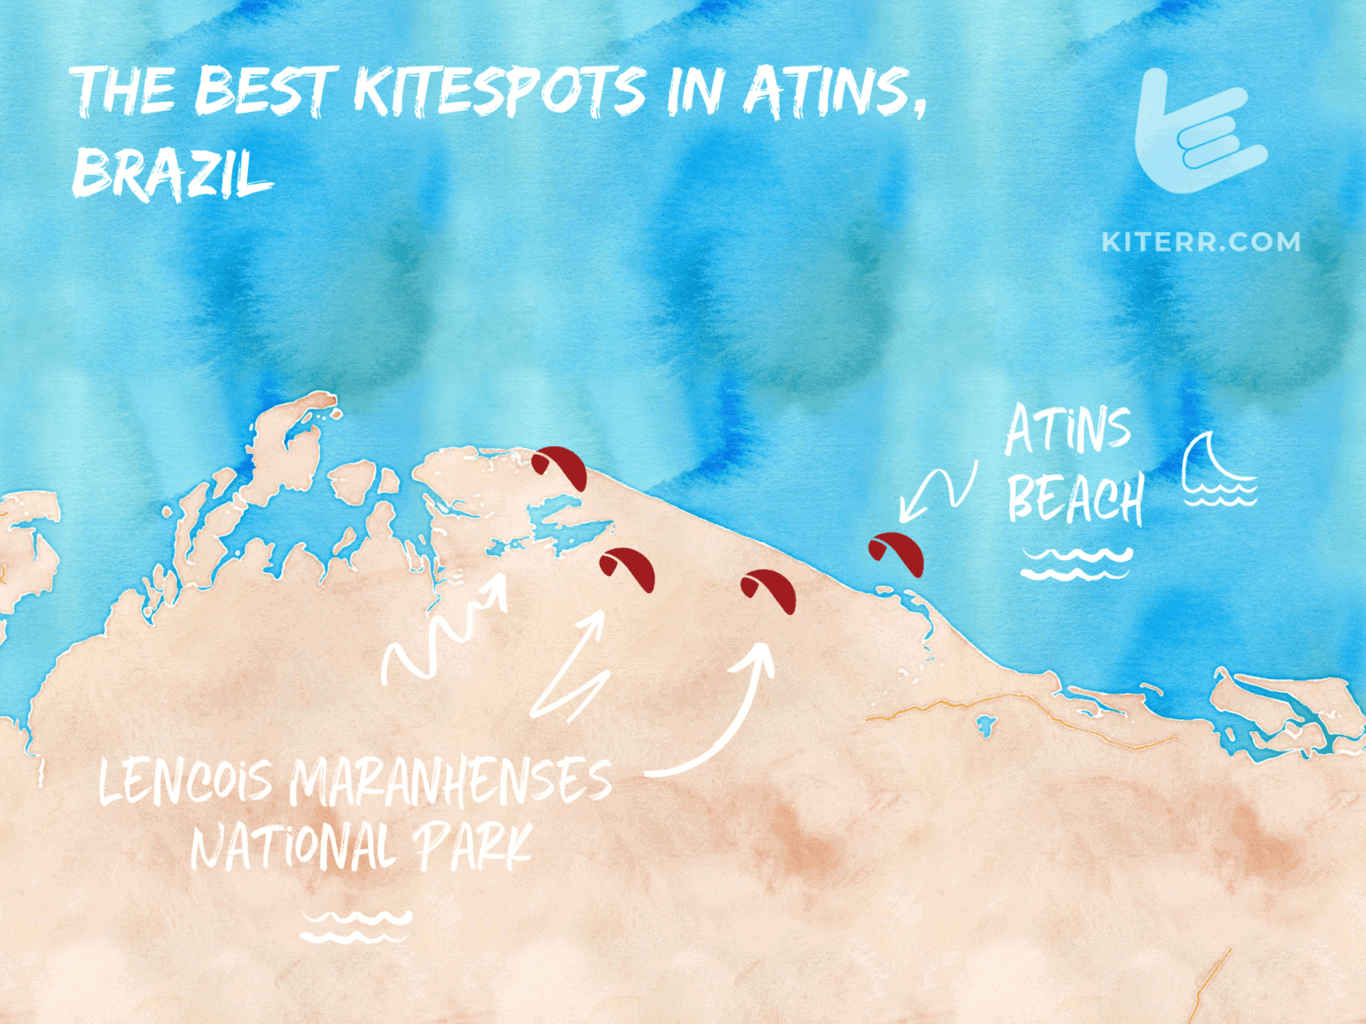 The best kitesurfing spots in Brazil - Atins - map & spot guide // Kiterr.com